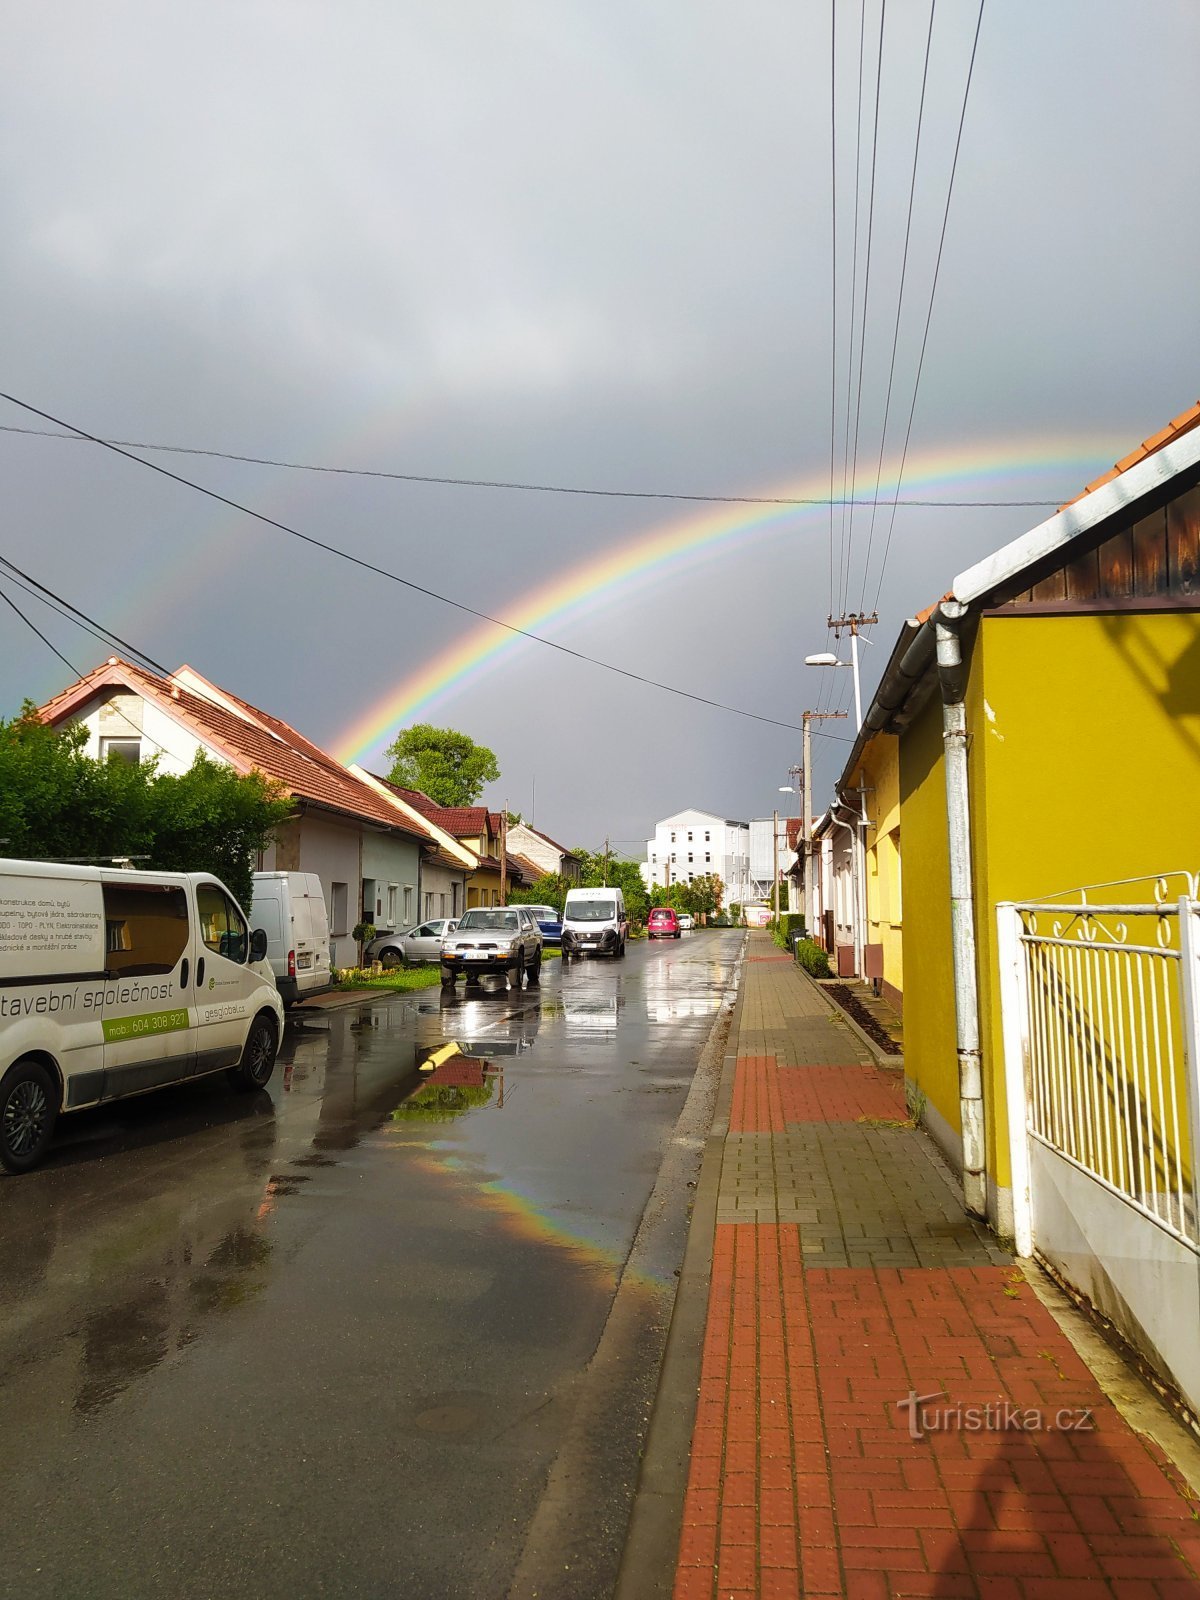 El arco iris sobre la parada de tren Malenovice - centro